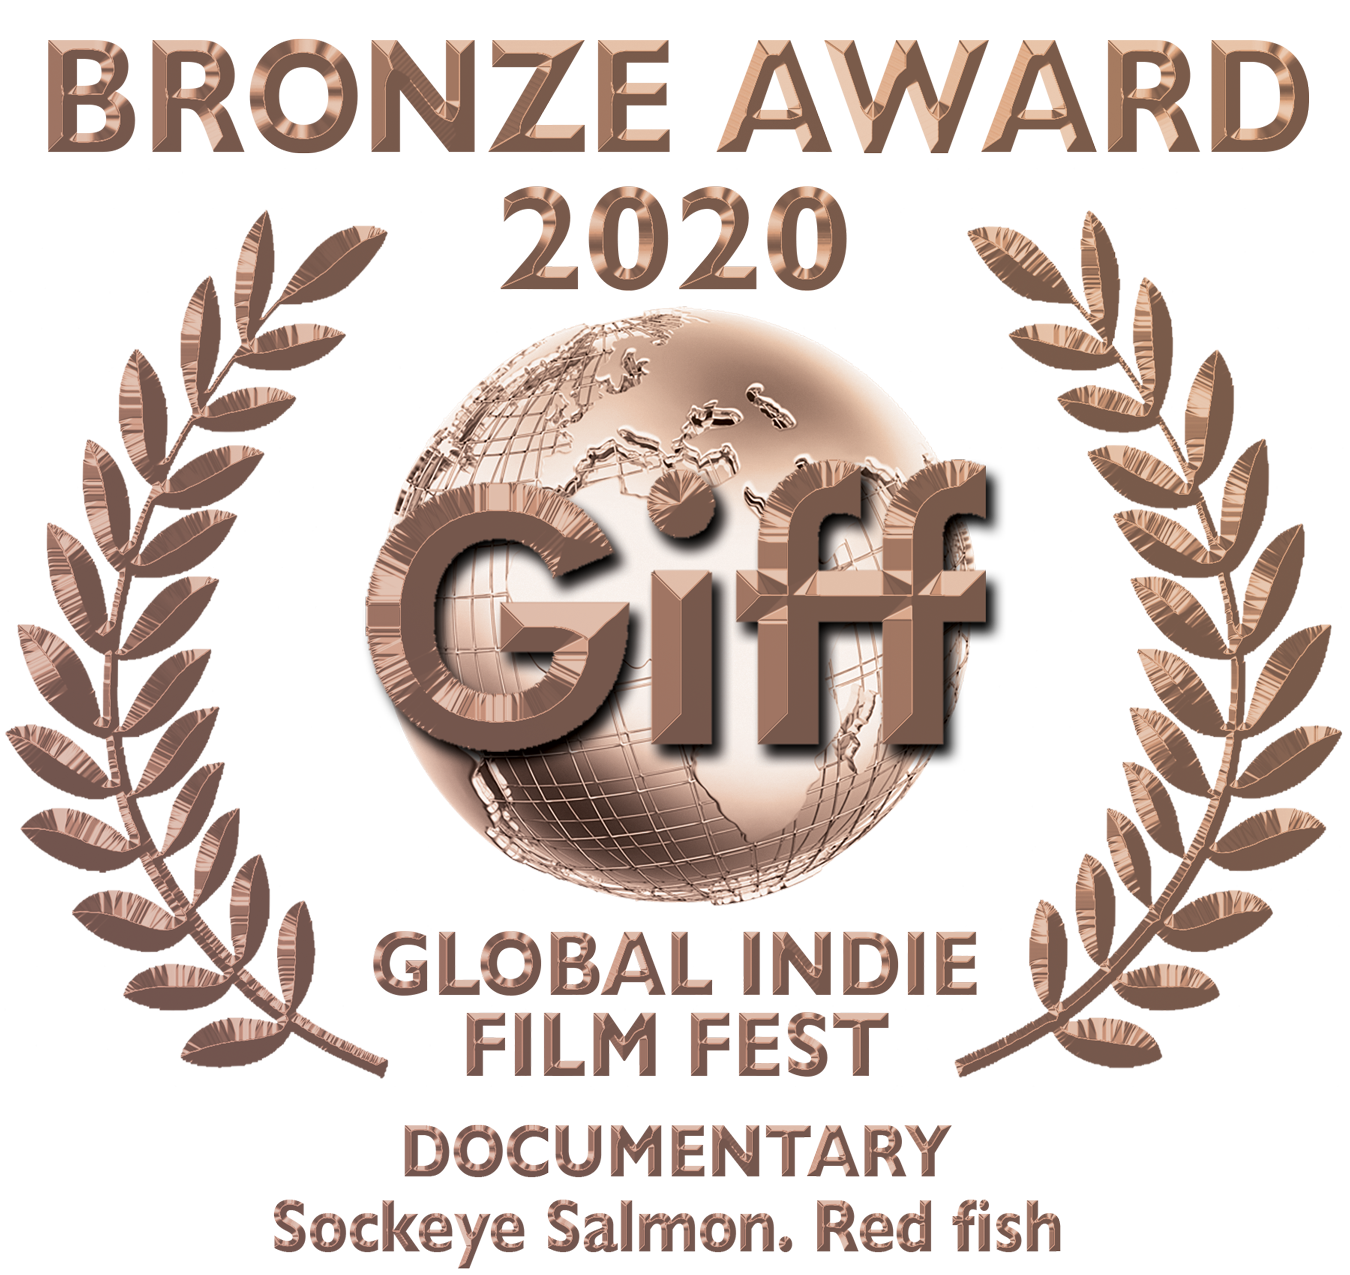 Giff Bronze Award Documentary